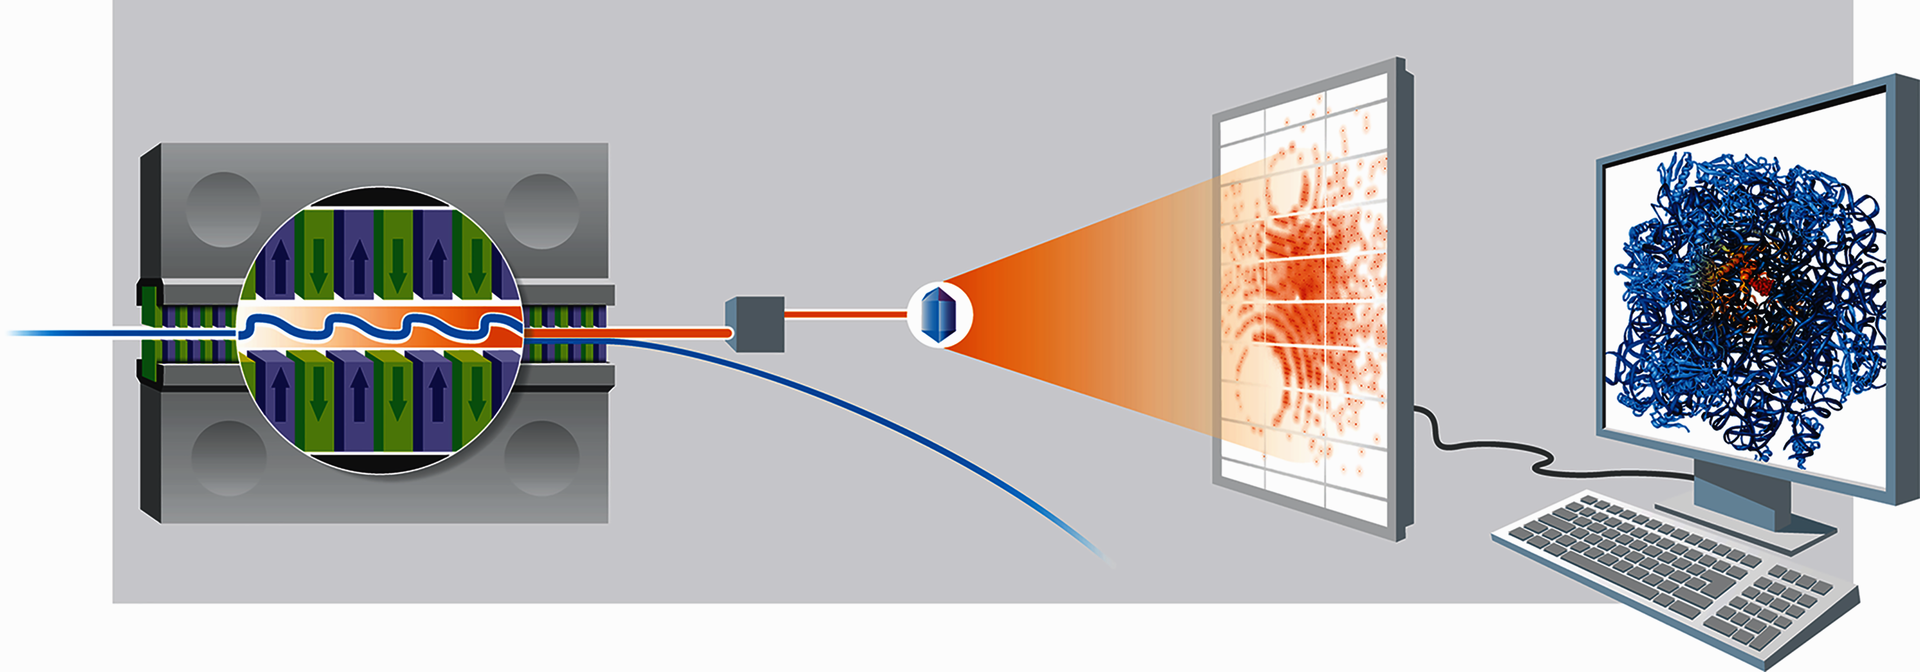 Links ist eine Magneteinheit mit wechselnden Farben und Pfeilen gezeigt. Hindurch führt im Slalom eine blaue Linie, die den Kurs der Elektronen in diesem Undulator darstellt. In der Mitte trifft ein orangefarbener Röntgenstrahl auf eine Probe. Rechts davon ist ein Streubild gezeigt, dahinter ein Computerbildschirm mit einer Molekülstruktur.